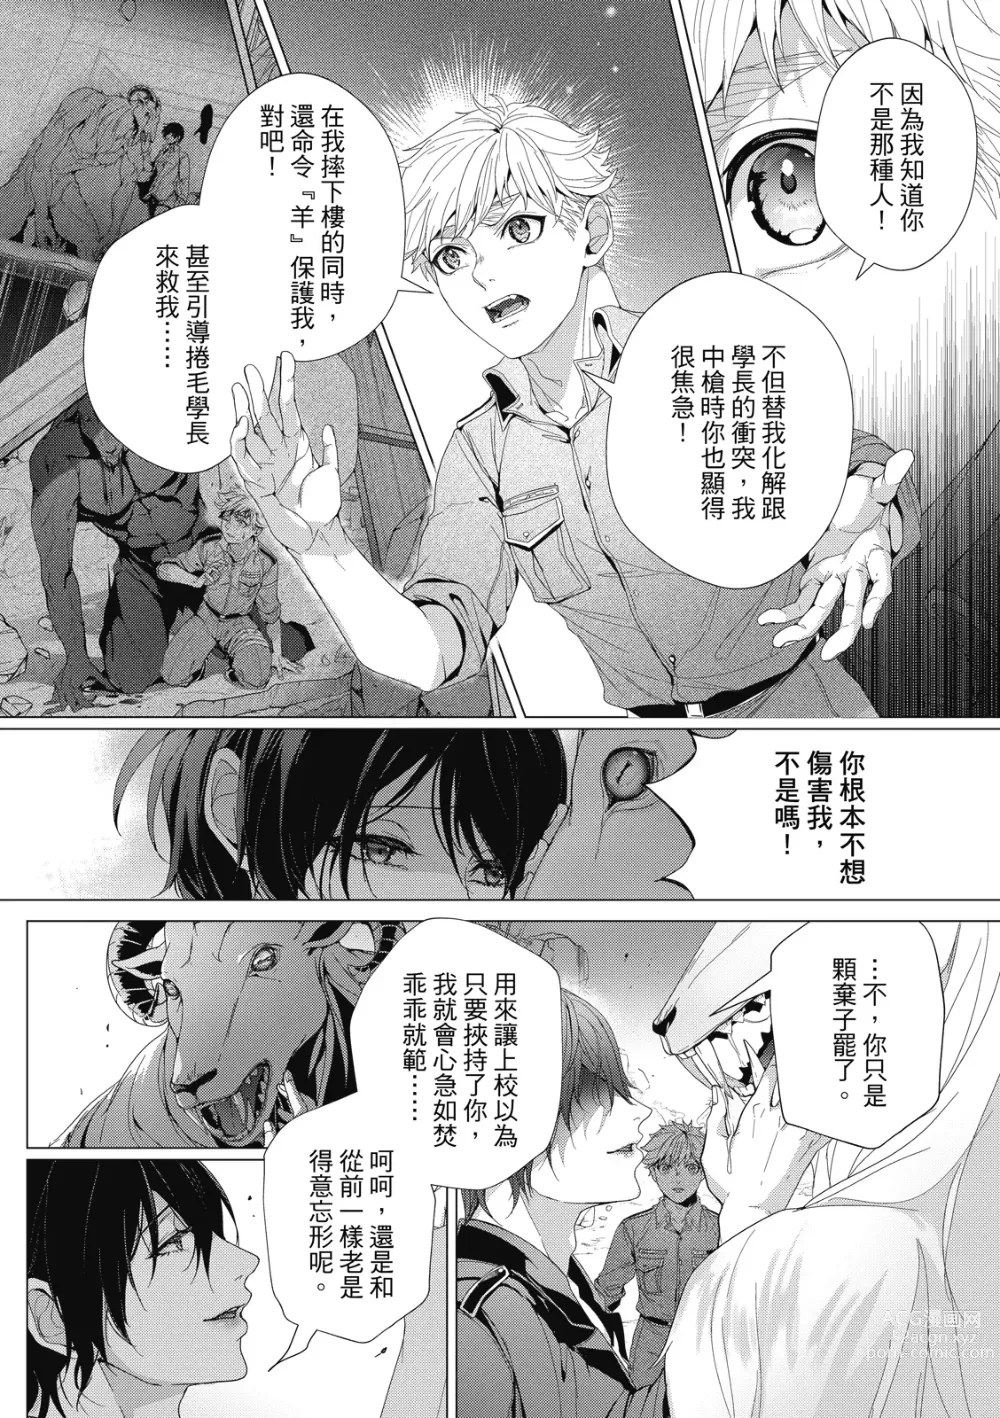 Page 218 of manga Fruit of Glaring Luxuri